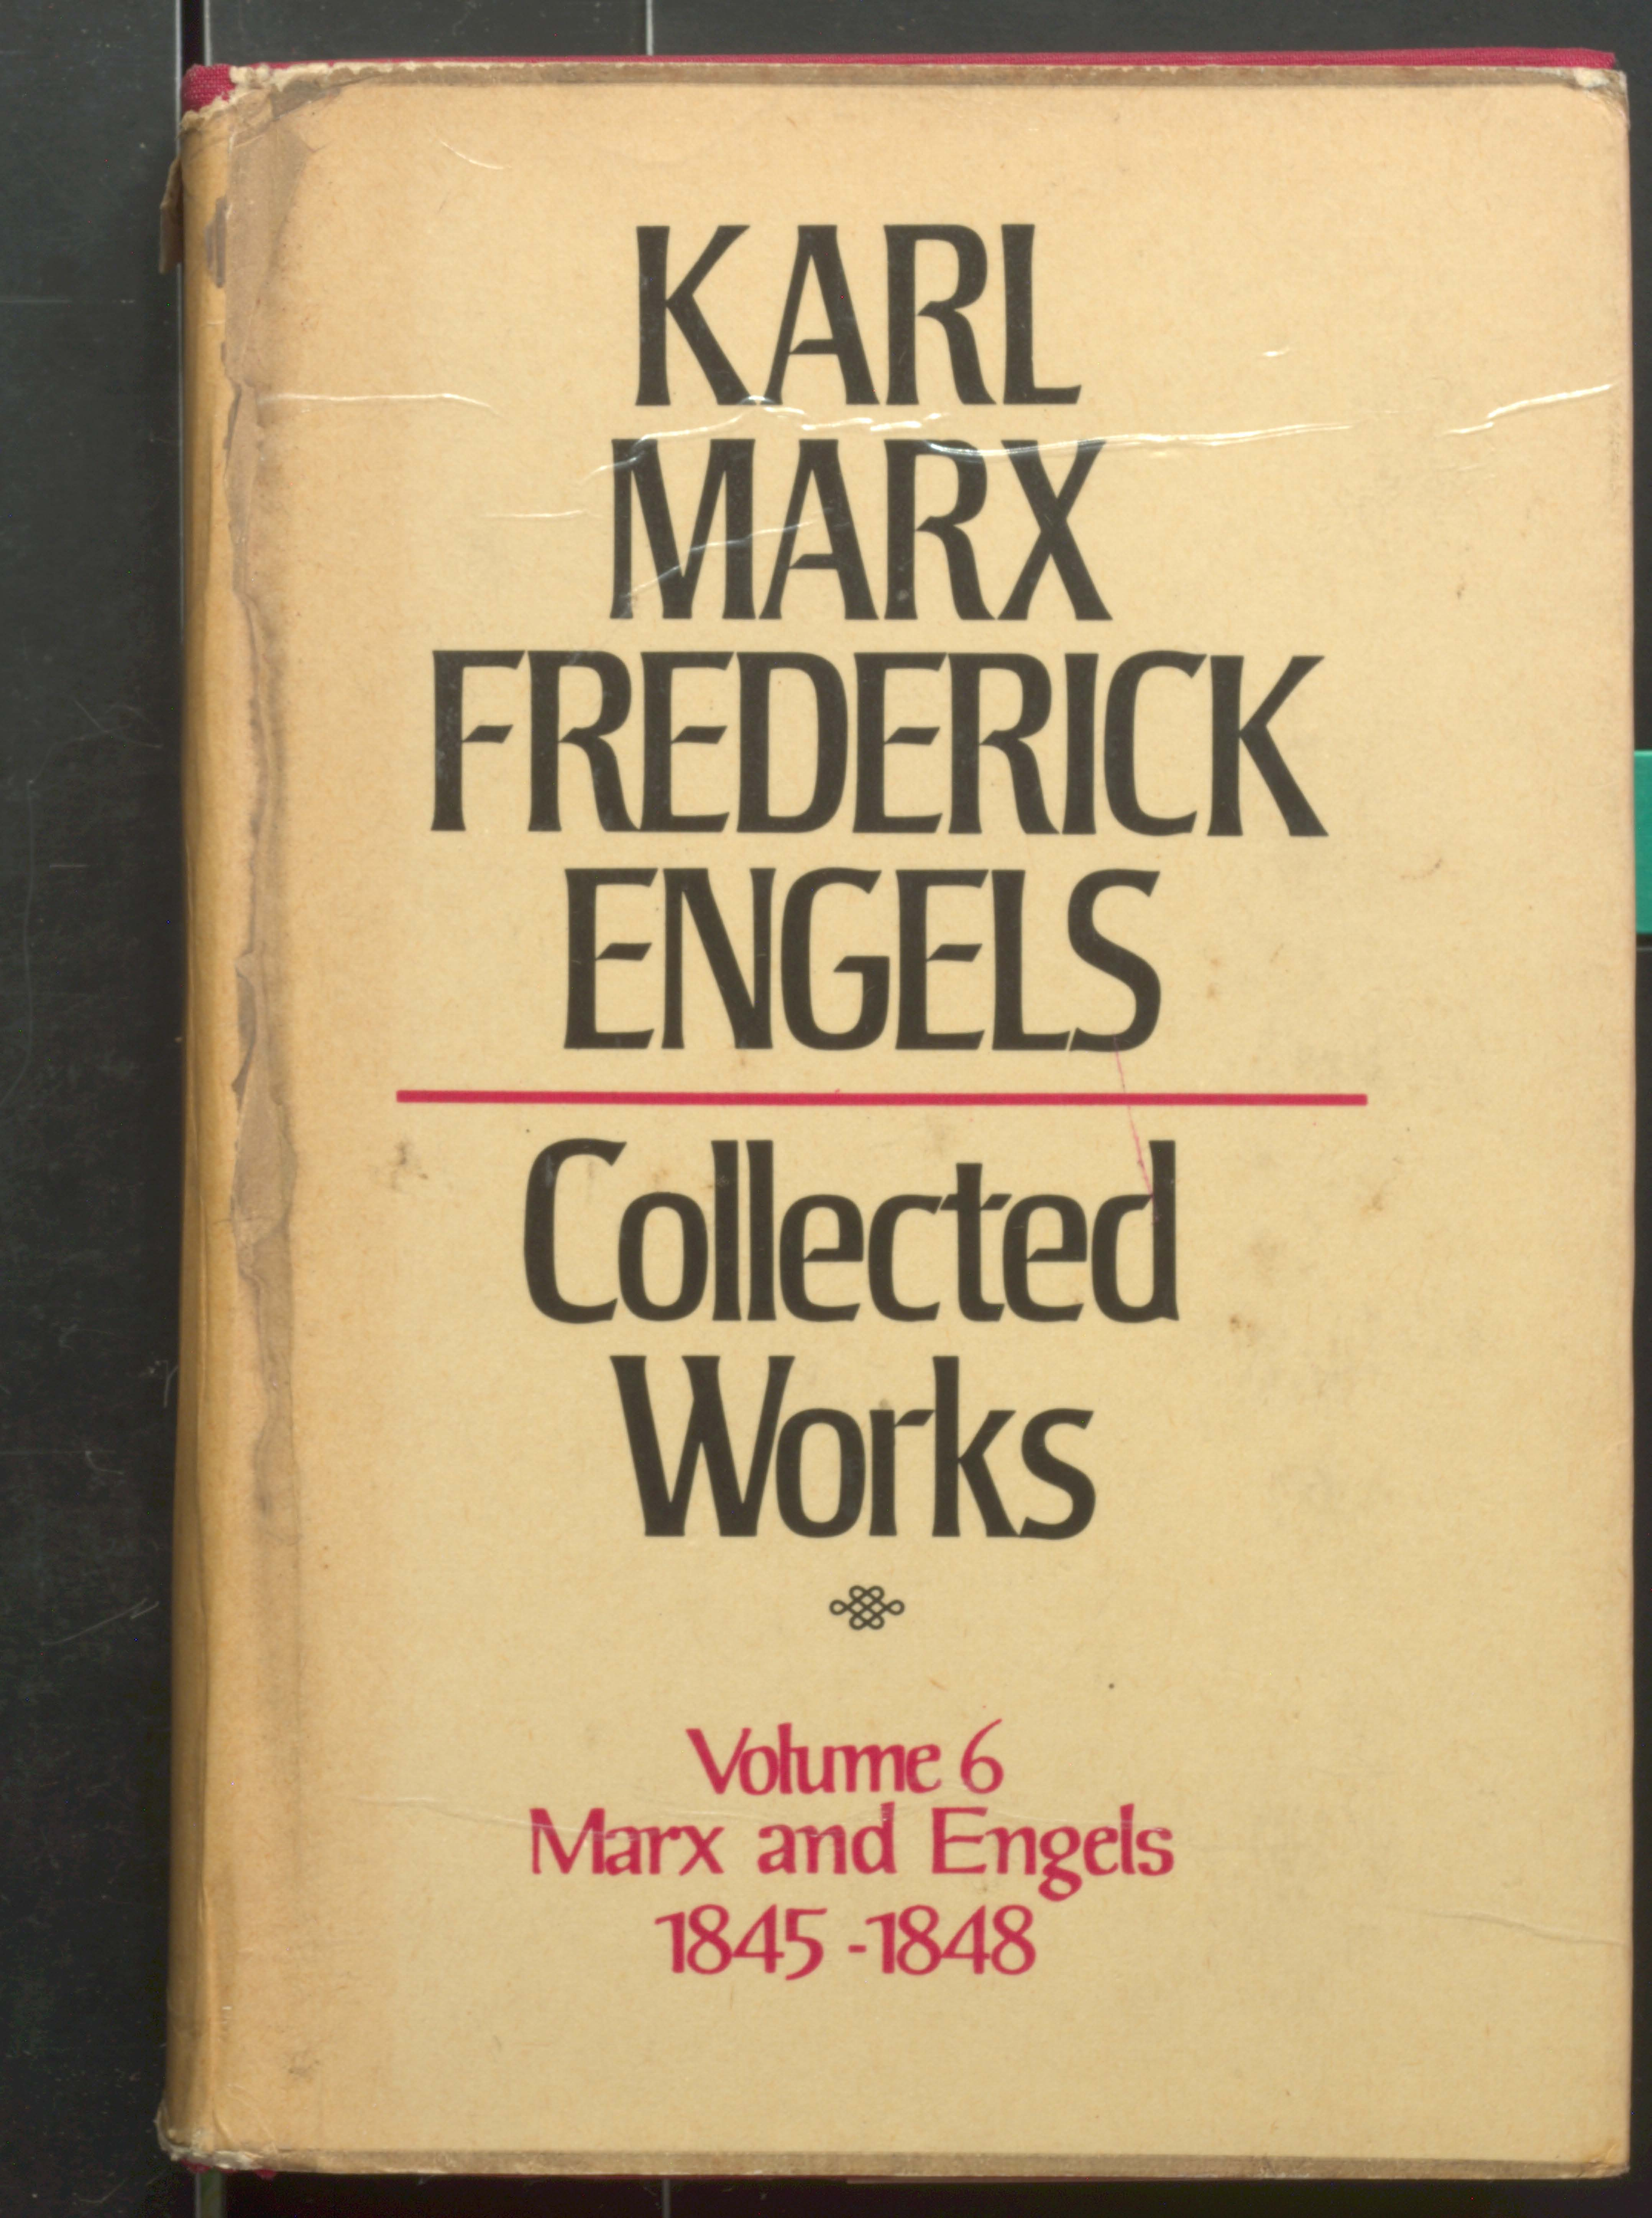 KARL MARX TREDERIEK ENGELS COLLECTED WORKS (VOL-6)1845-1848